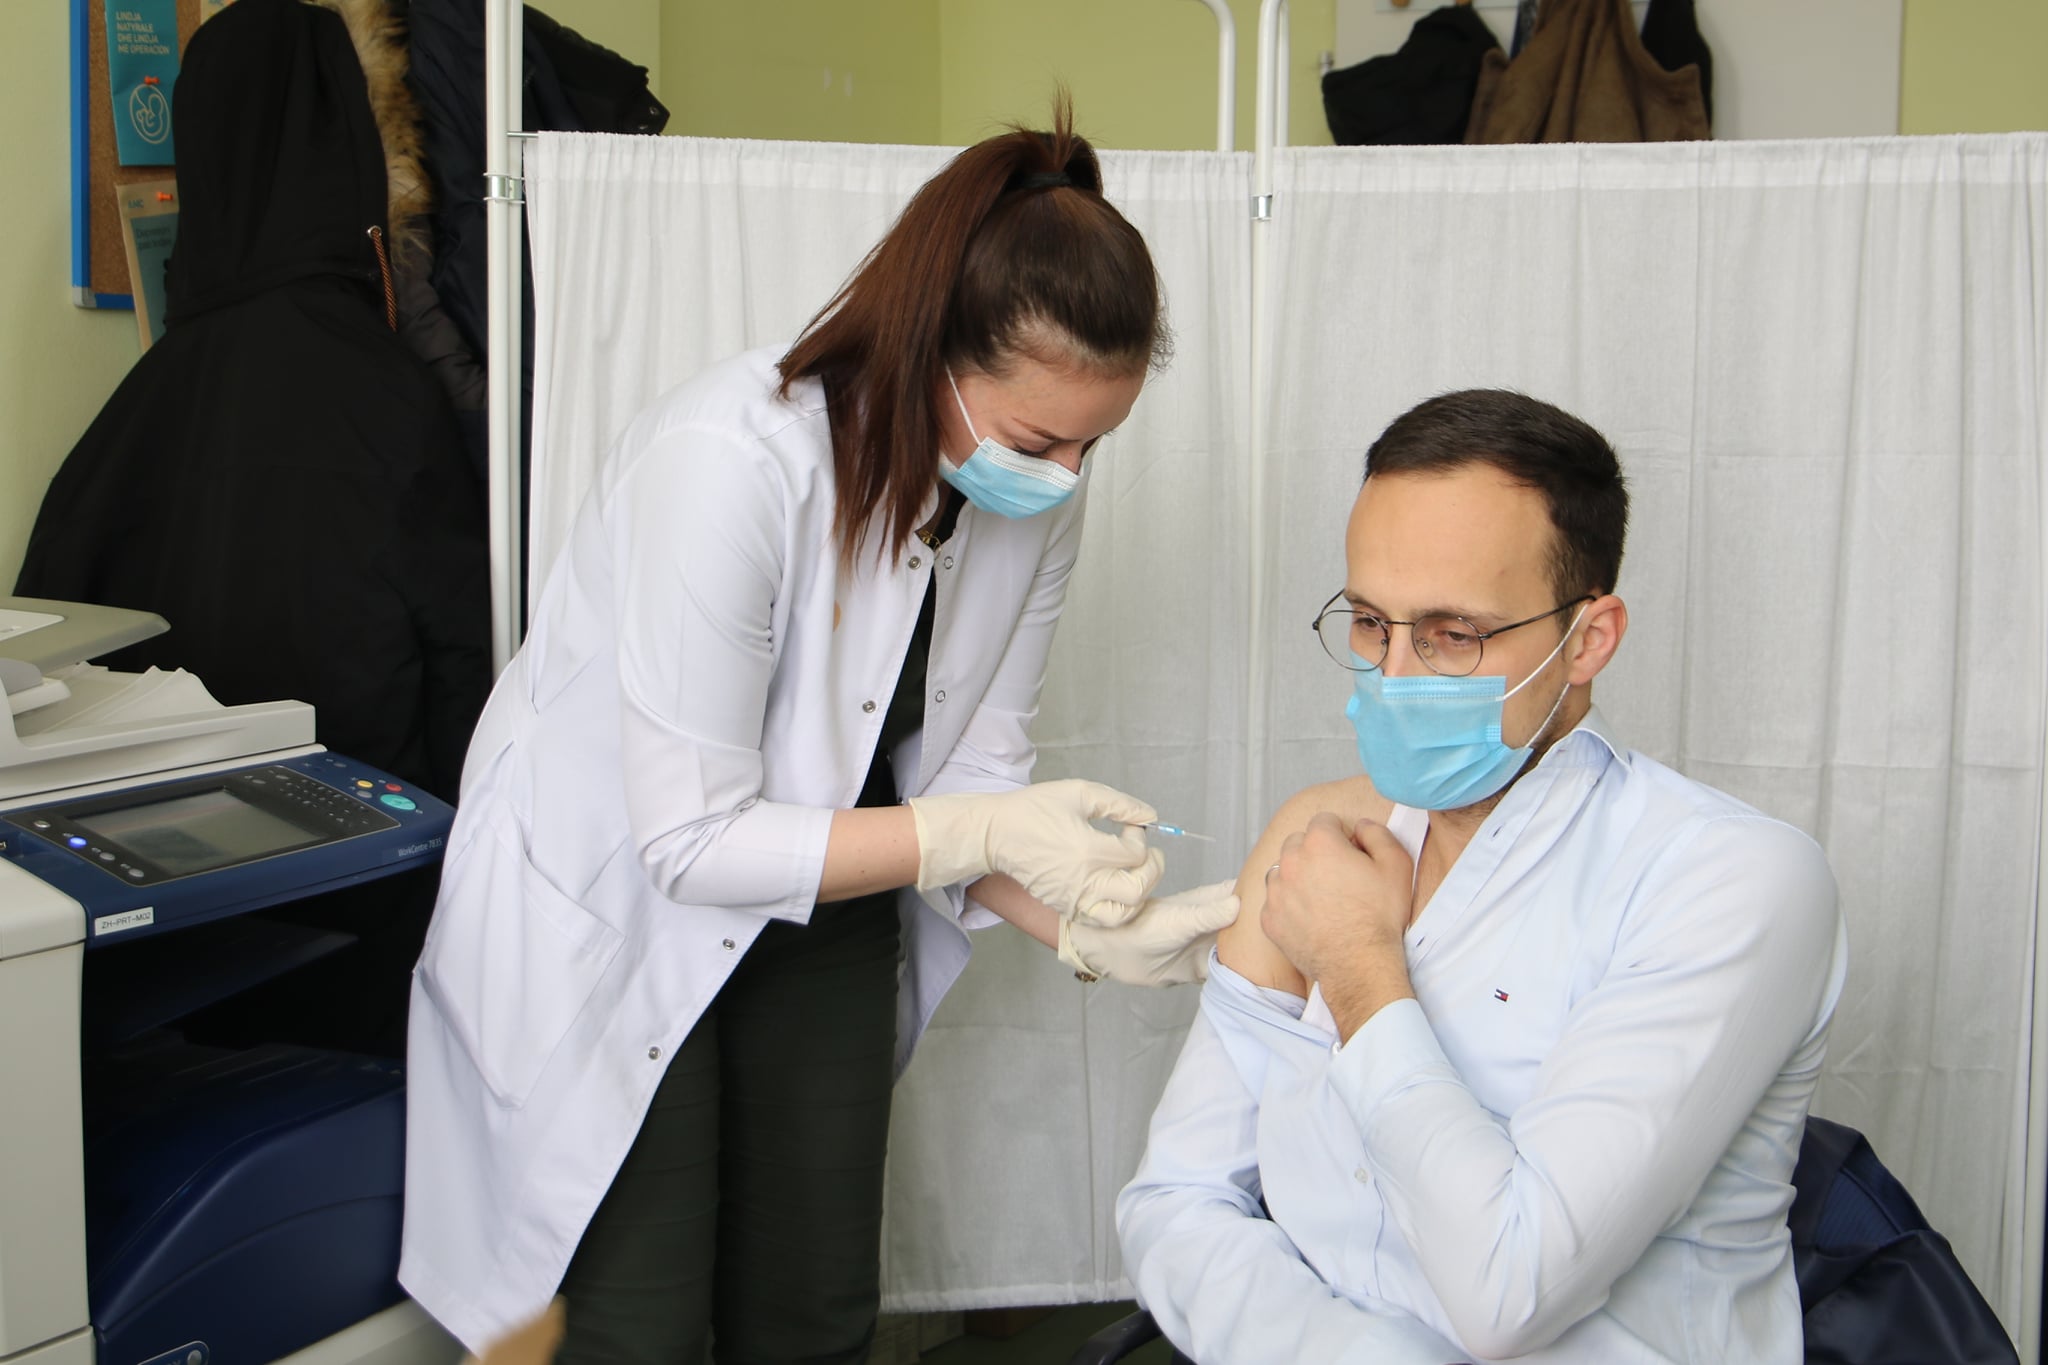 Përforcohet kryetari i Gjilanit, merr dozën e tretë të vaksinës